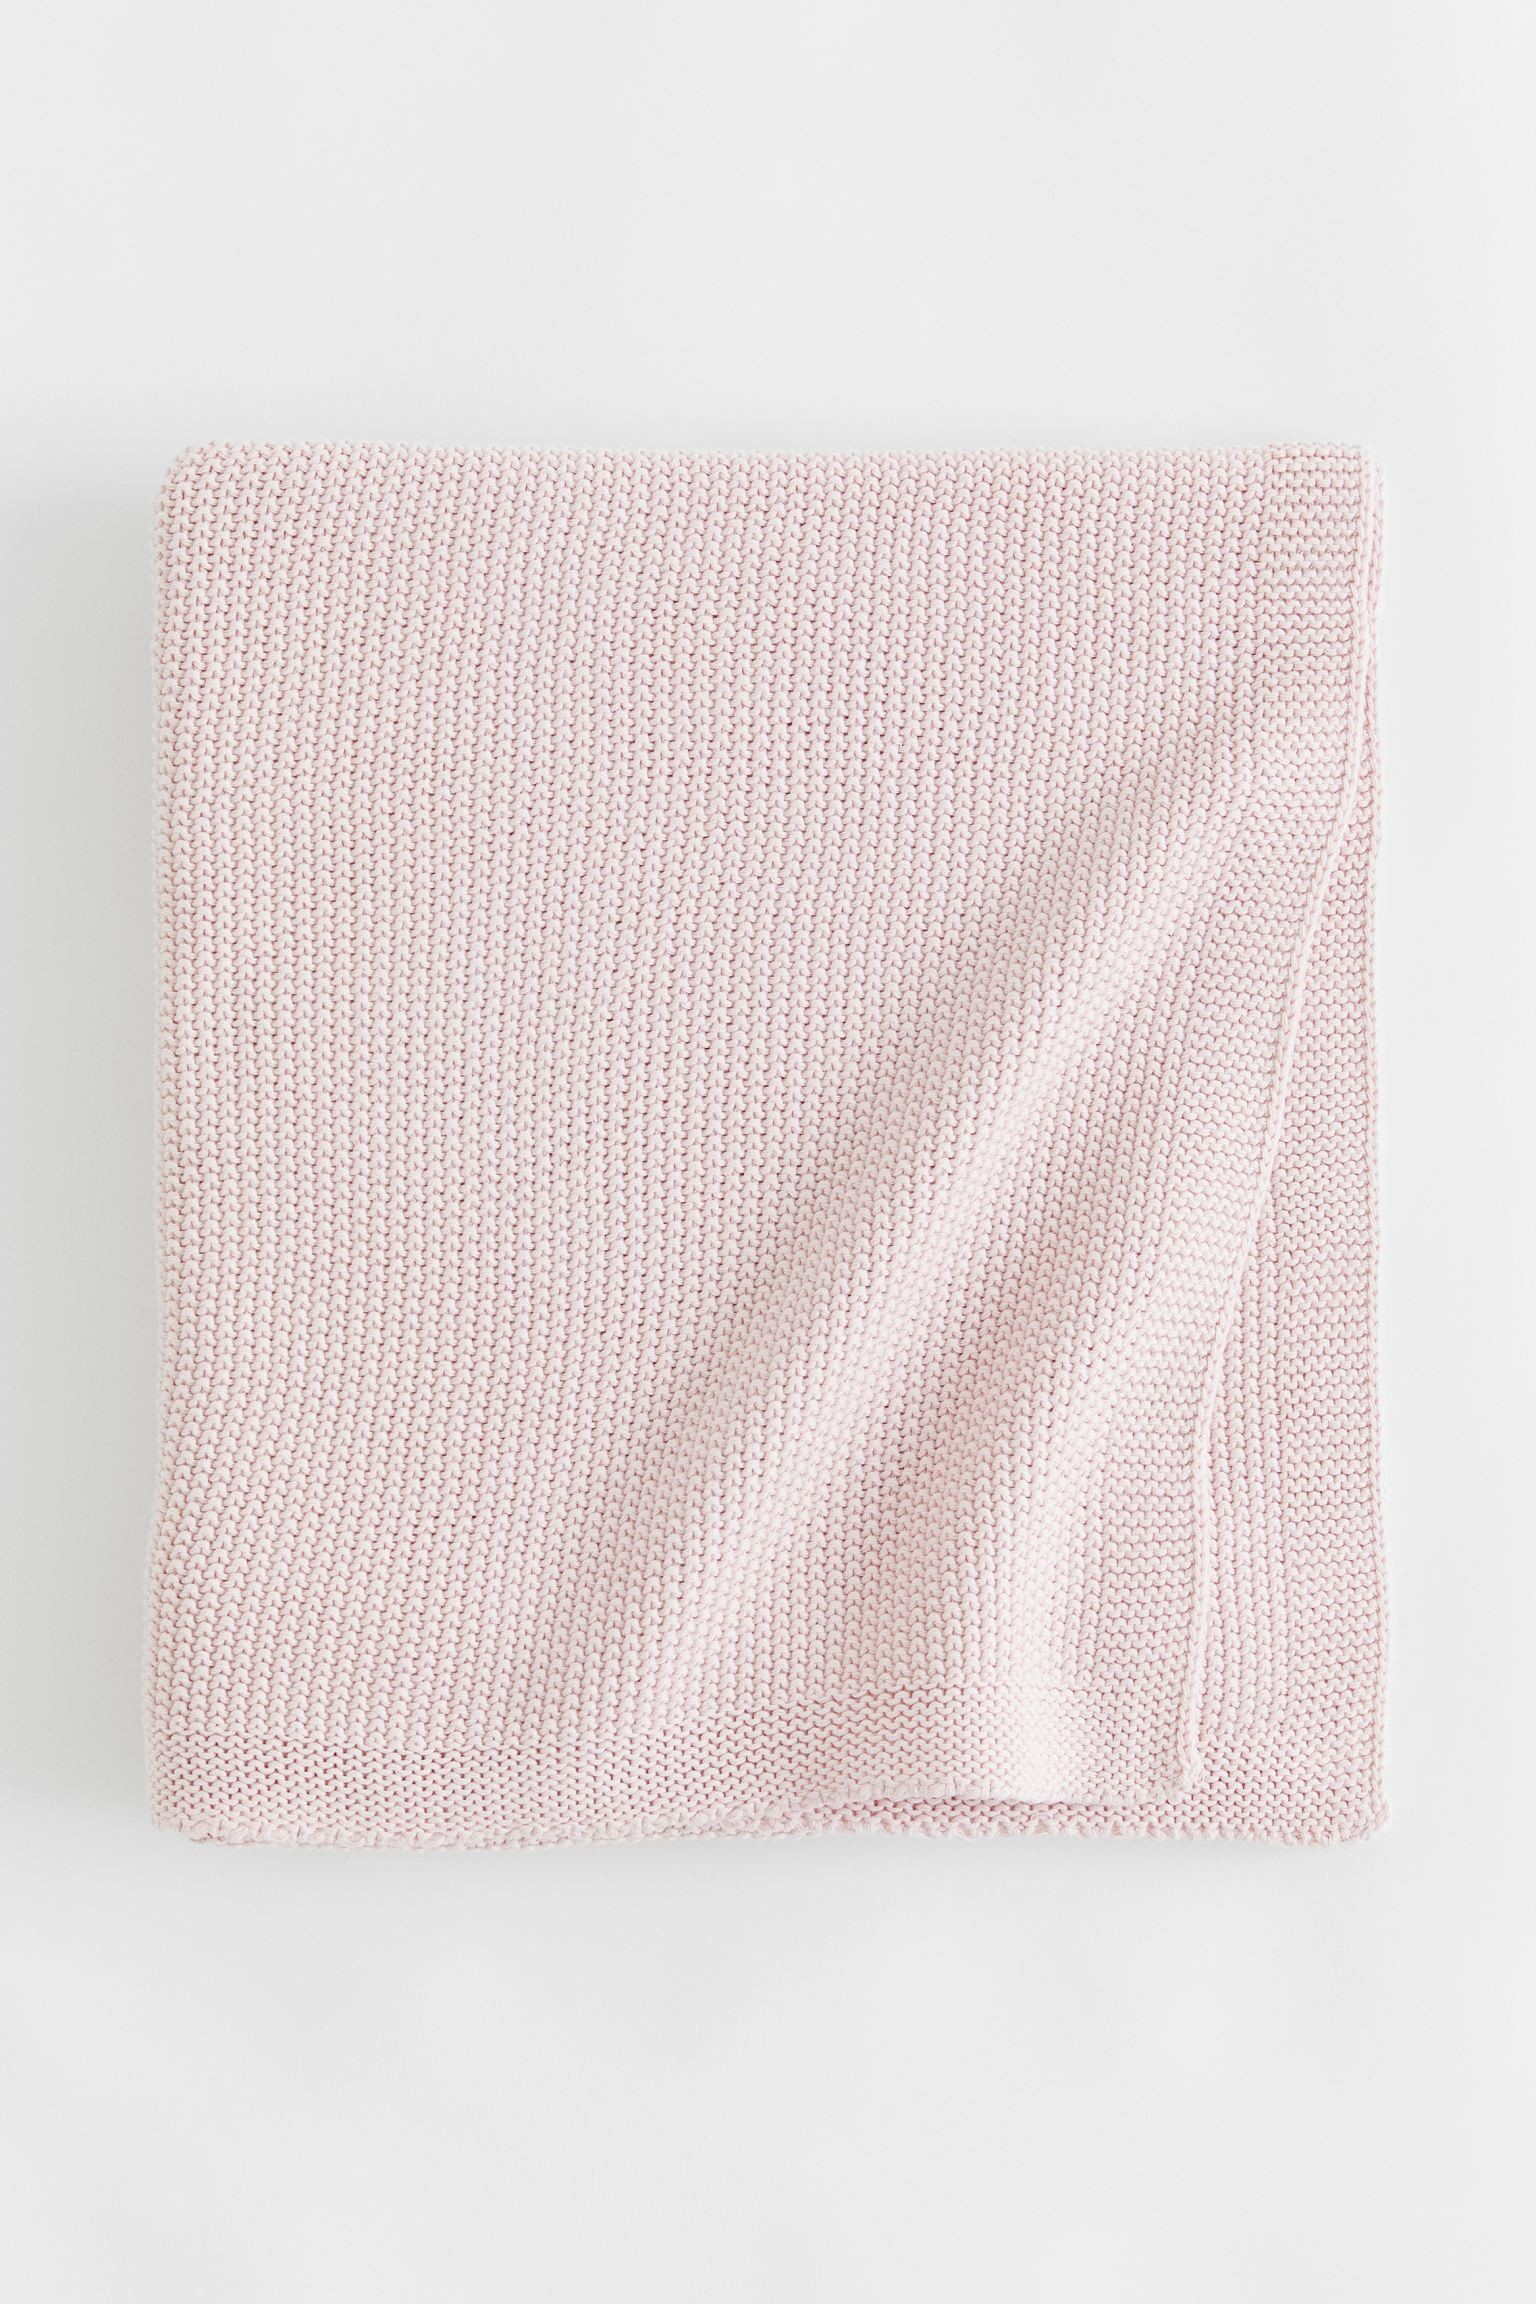 Хлопковое одеяло с рисовым переплетением, Светло-розовый, 90x90